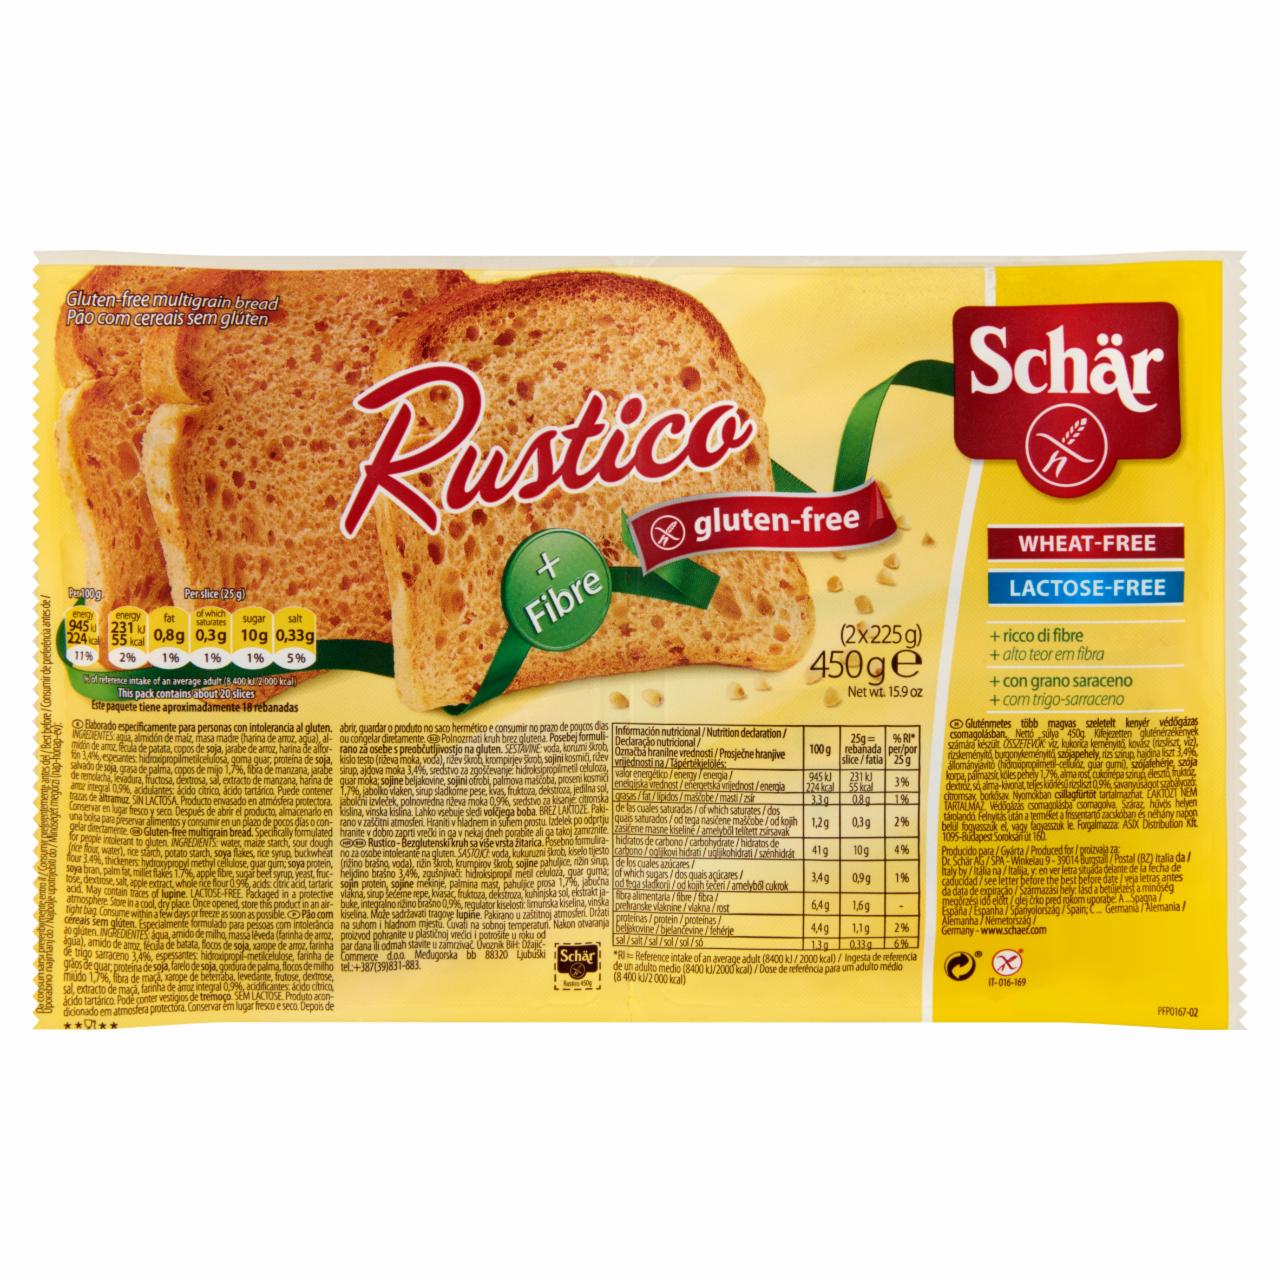 Képek - Schär Rustico gluténmentes több magvas szeletelt kenyér 2 x 225 g